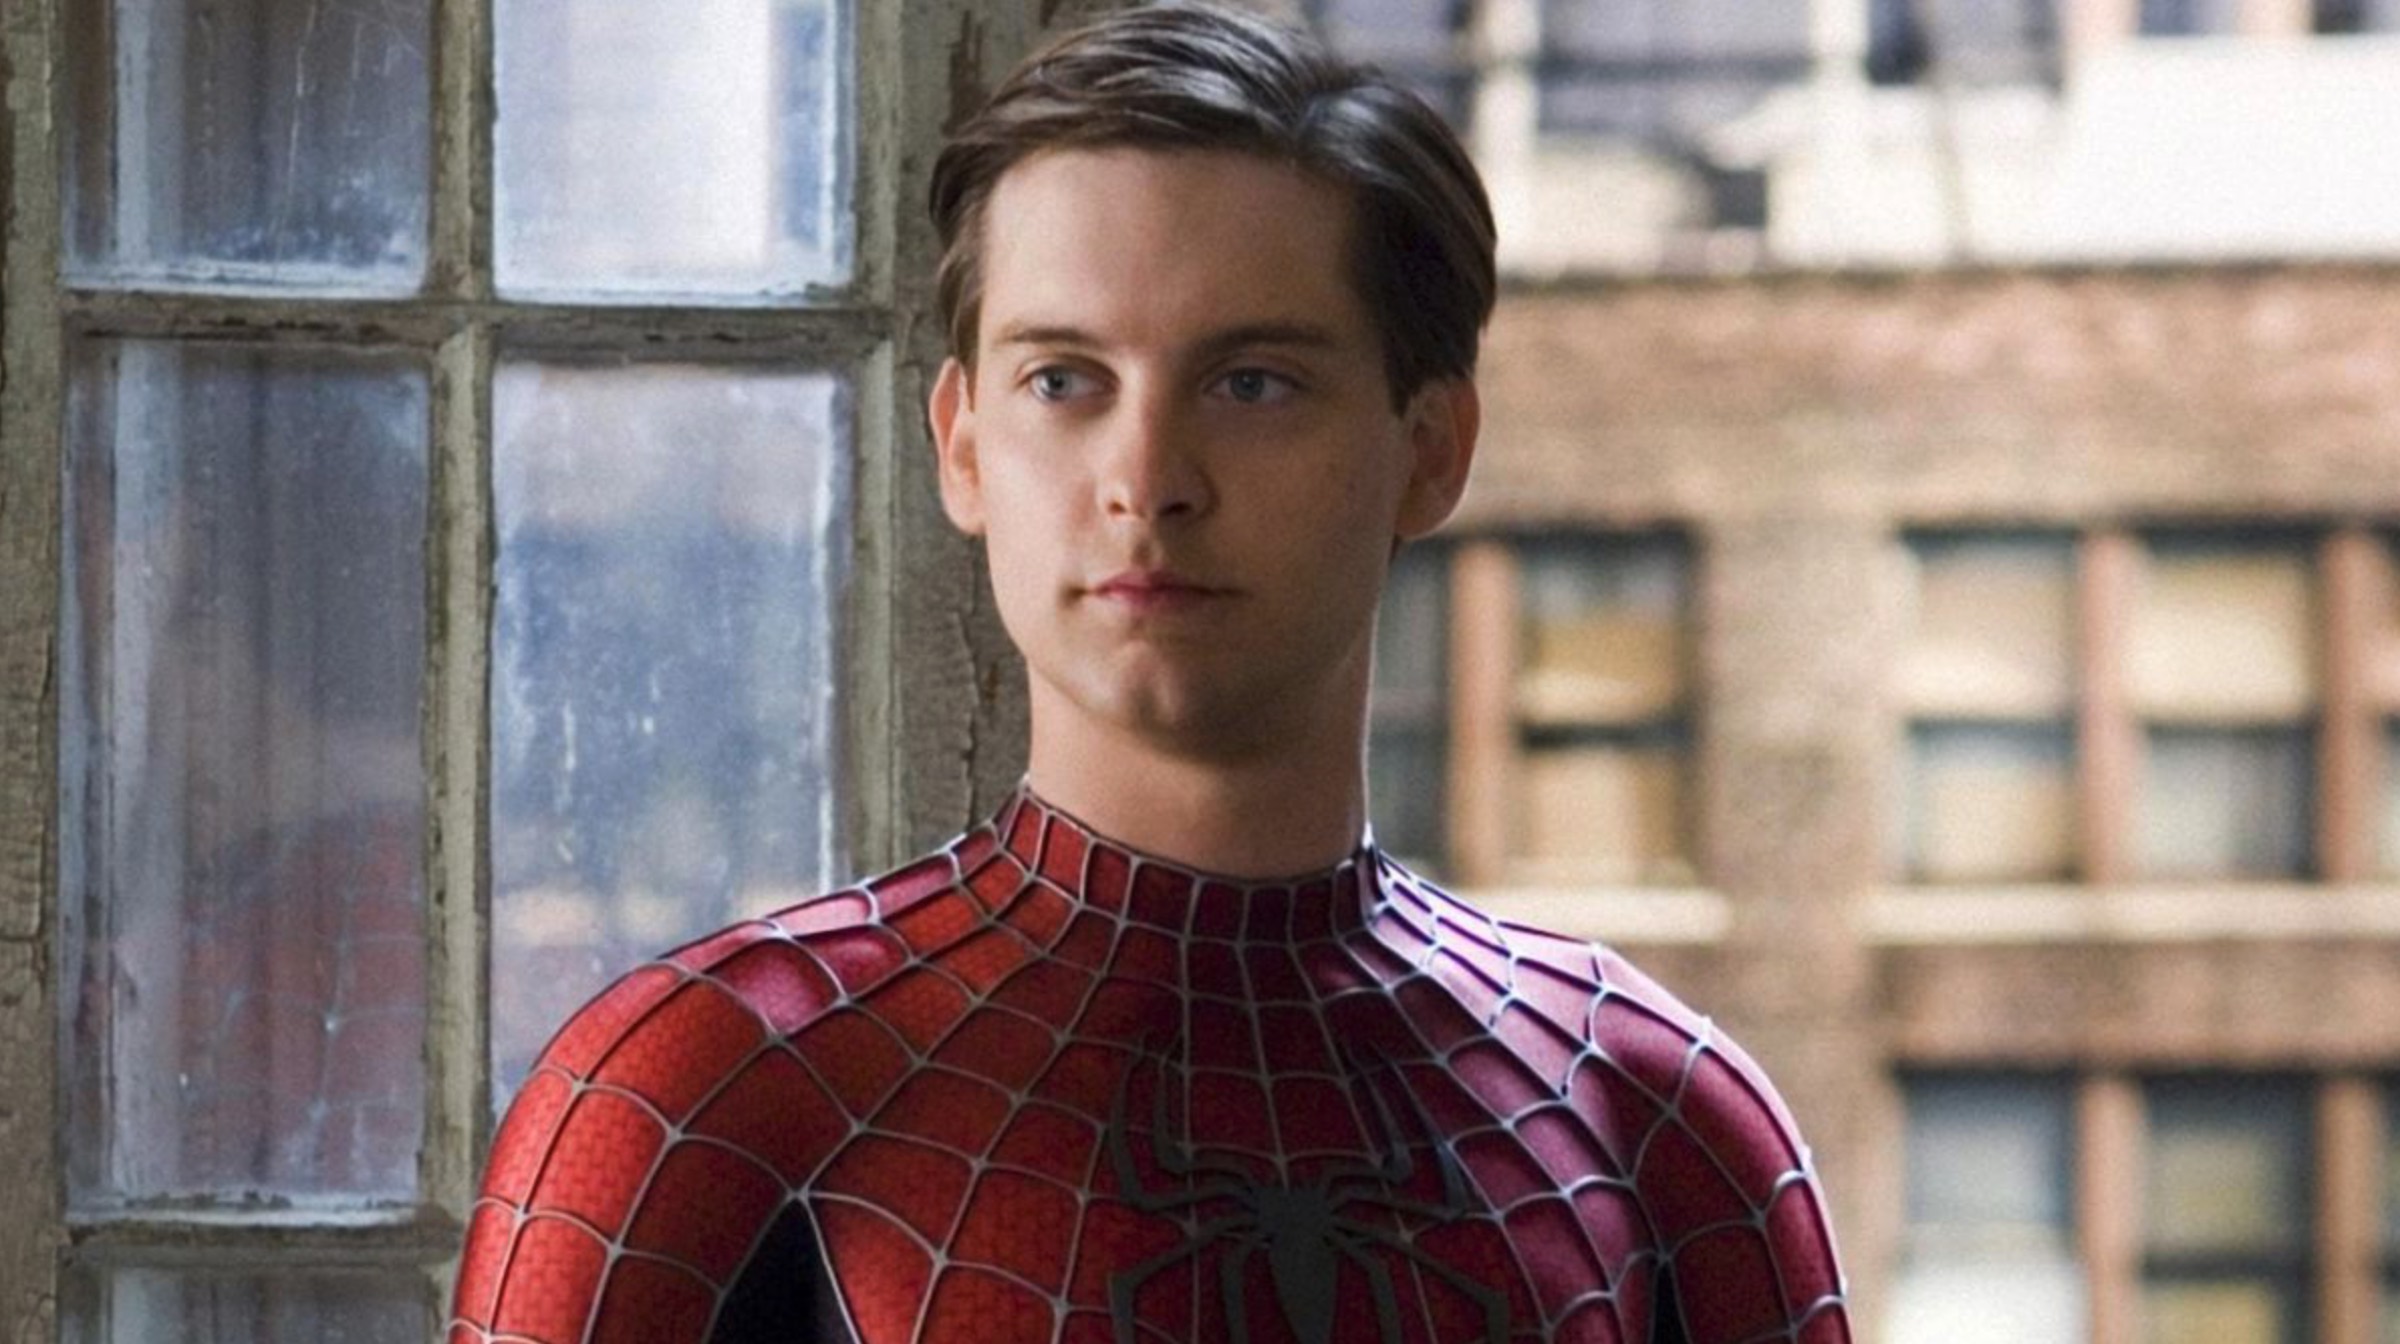 Spider-Man 4, w ktÃ³rym zagra Tobey MaGuire, to nie jest gÅ‚upi pomysÅ‚